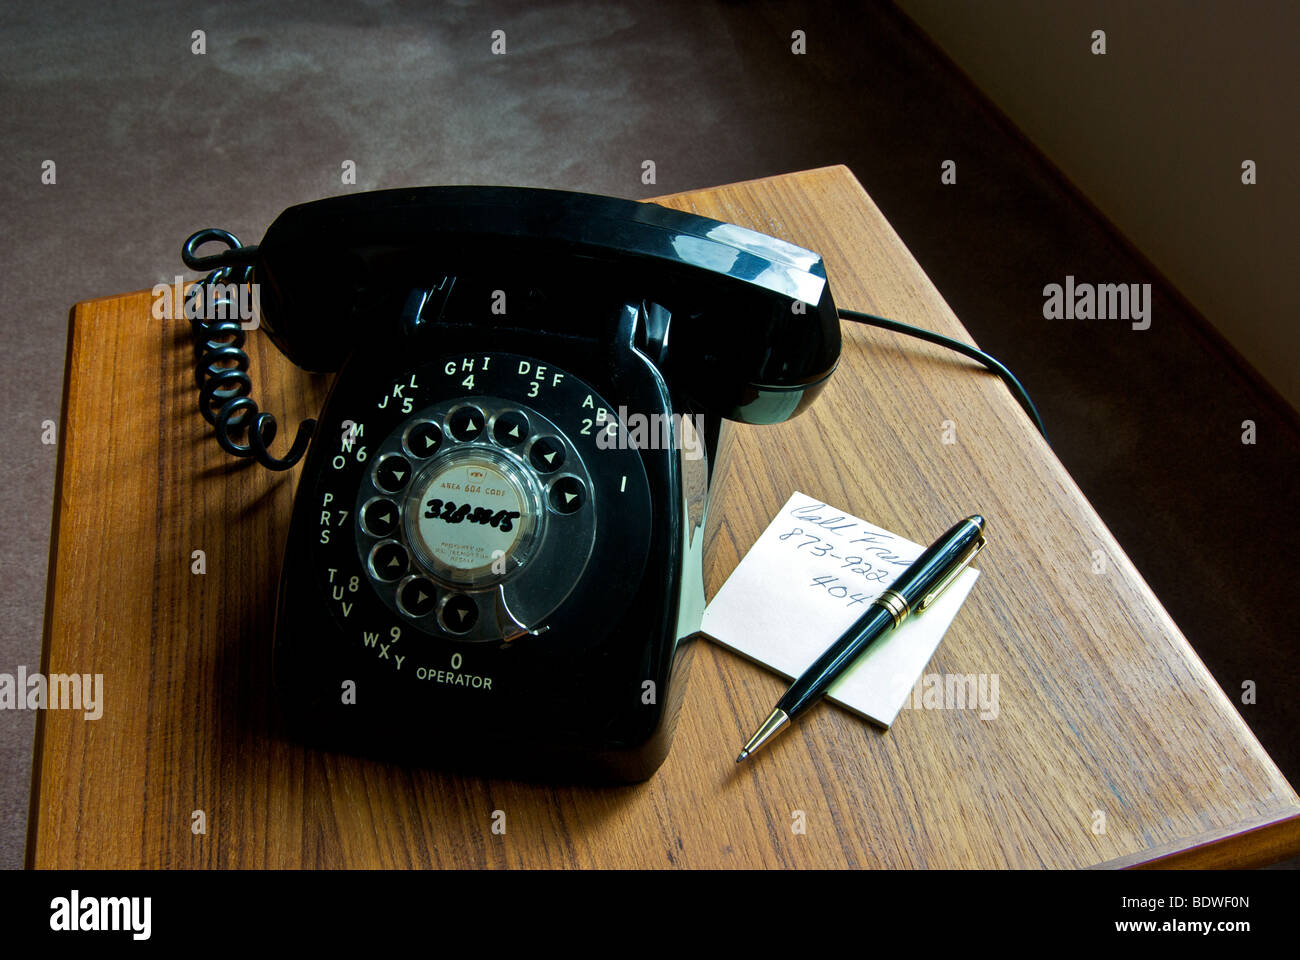 Una tecnologia ormai superata vecchio nero manopola telefono sul lato di teak tabella Foto Stock